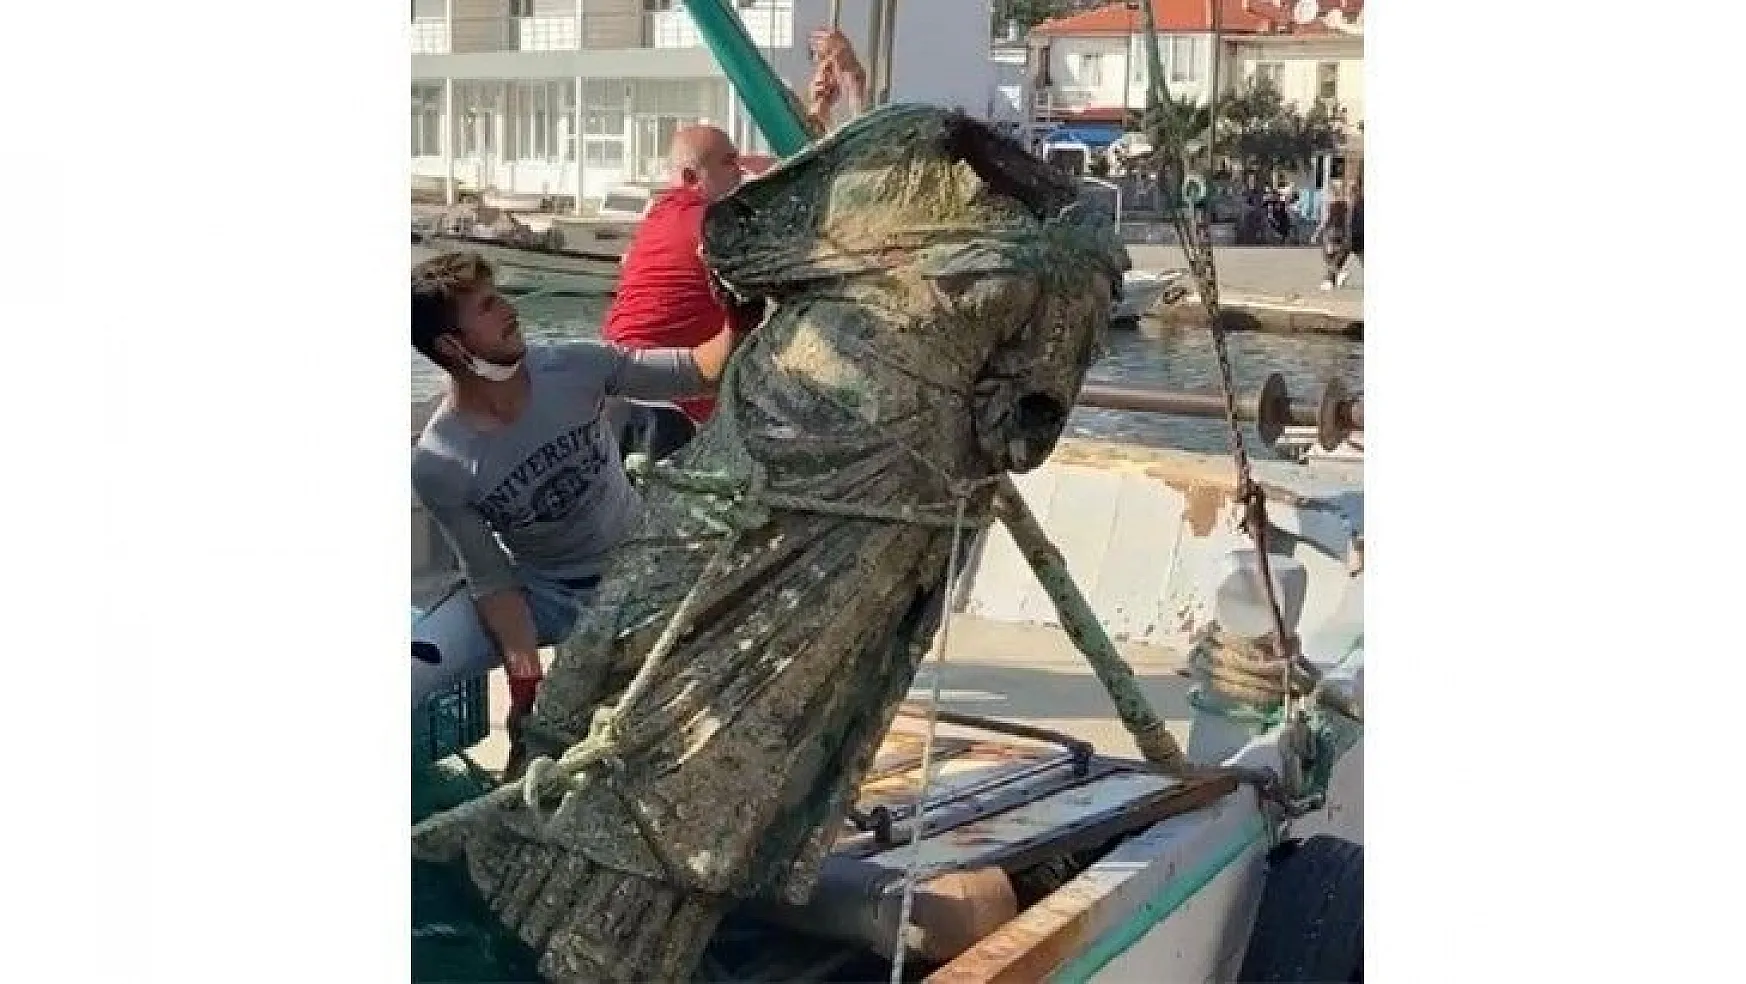 Balıkçıların ağına bu kez heykel takıldı